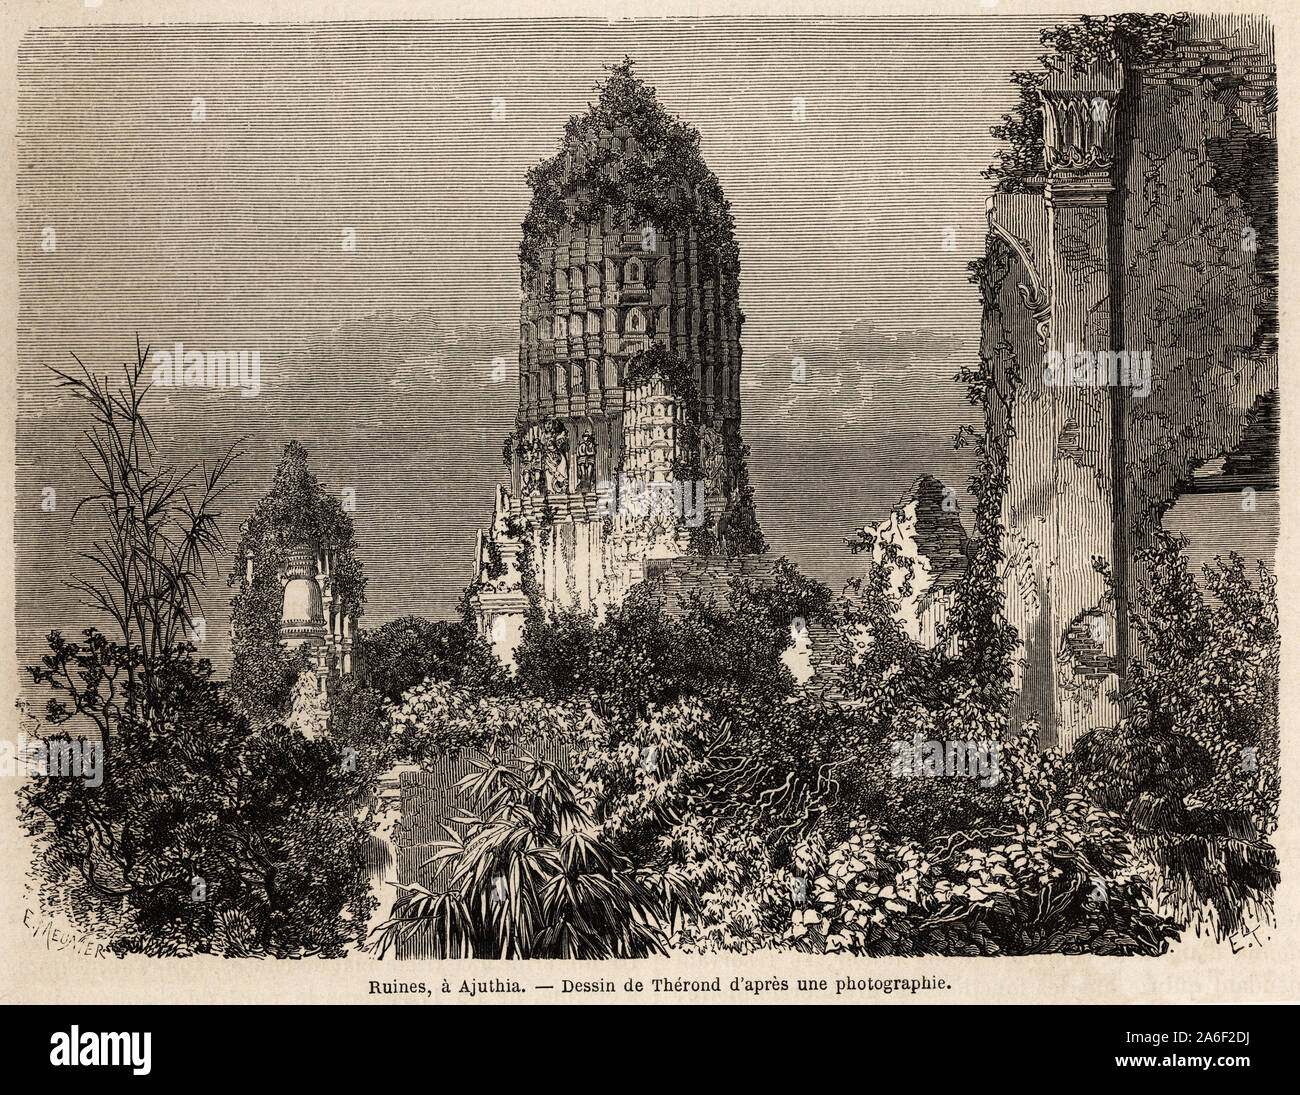 Les Ruinen pries dans la Vegetation de la Jungle, ein Ajuthia (andamanensee), dessin de illustrer Therond, pour le Voyage dans les royaumes de Siam, de C Stockfoto